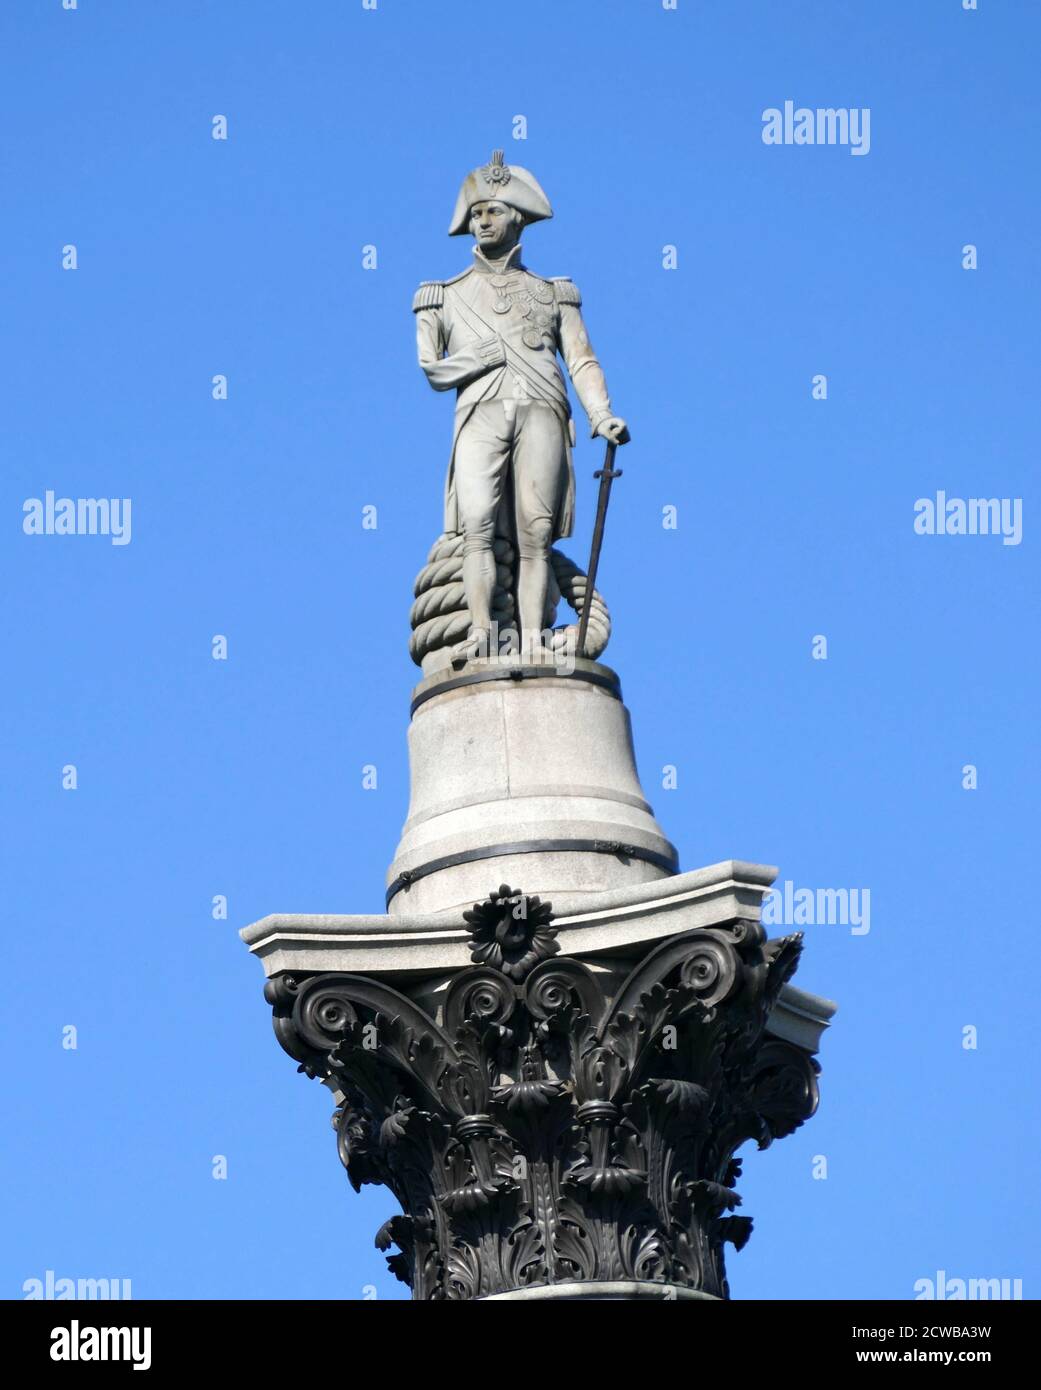 Nelson's Column ist ein Denkmal auf dem Trafalgar Square in der City of Westminster, Central London, erbaut zum Gedenken an Admiral Horatio Nelson, der 1805 bei der Schlacht von Trafalgar starb. Das Denkmal wurde zwischen 1840 und 1843 nach einem Entwurf von William Railton errichtet Stockfoto